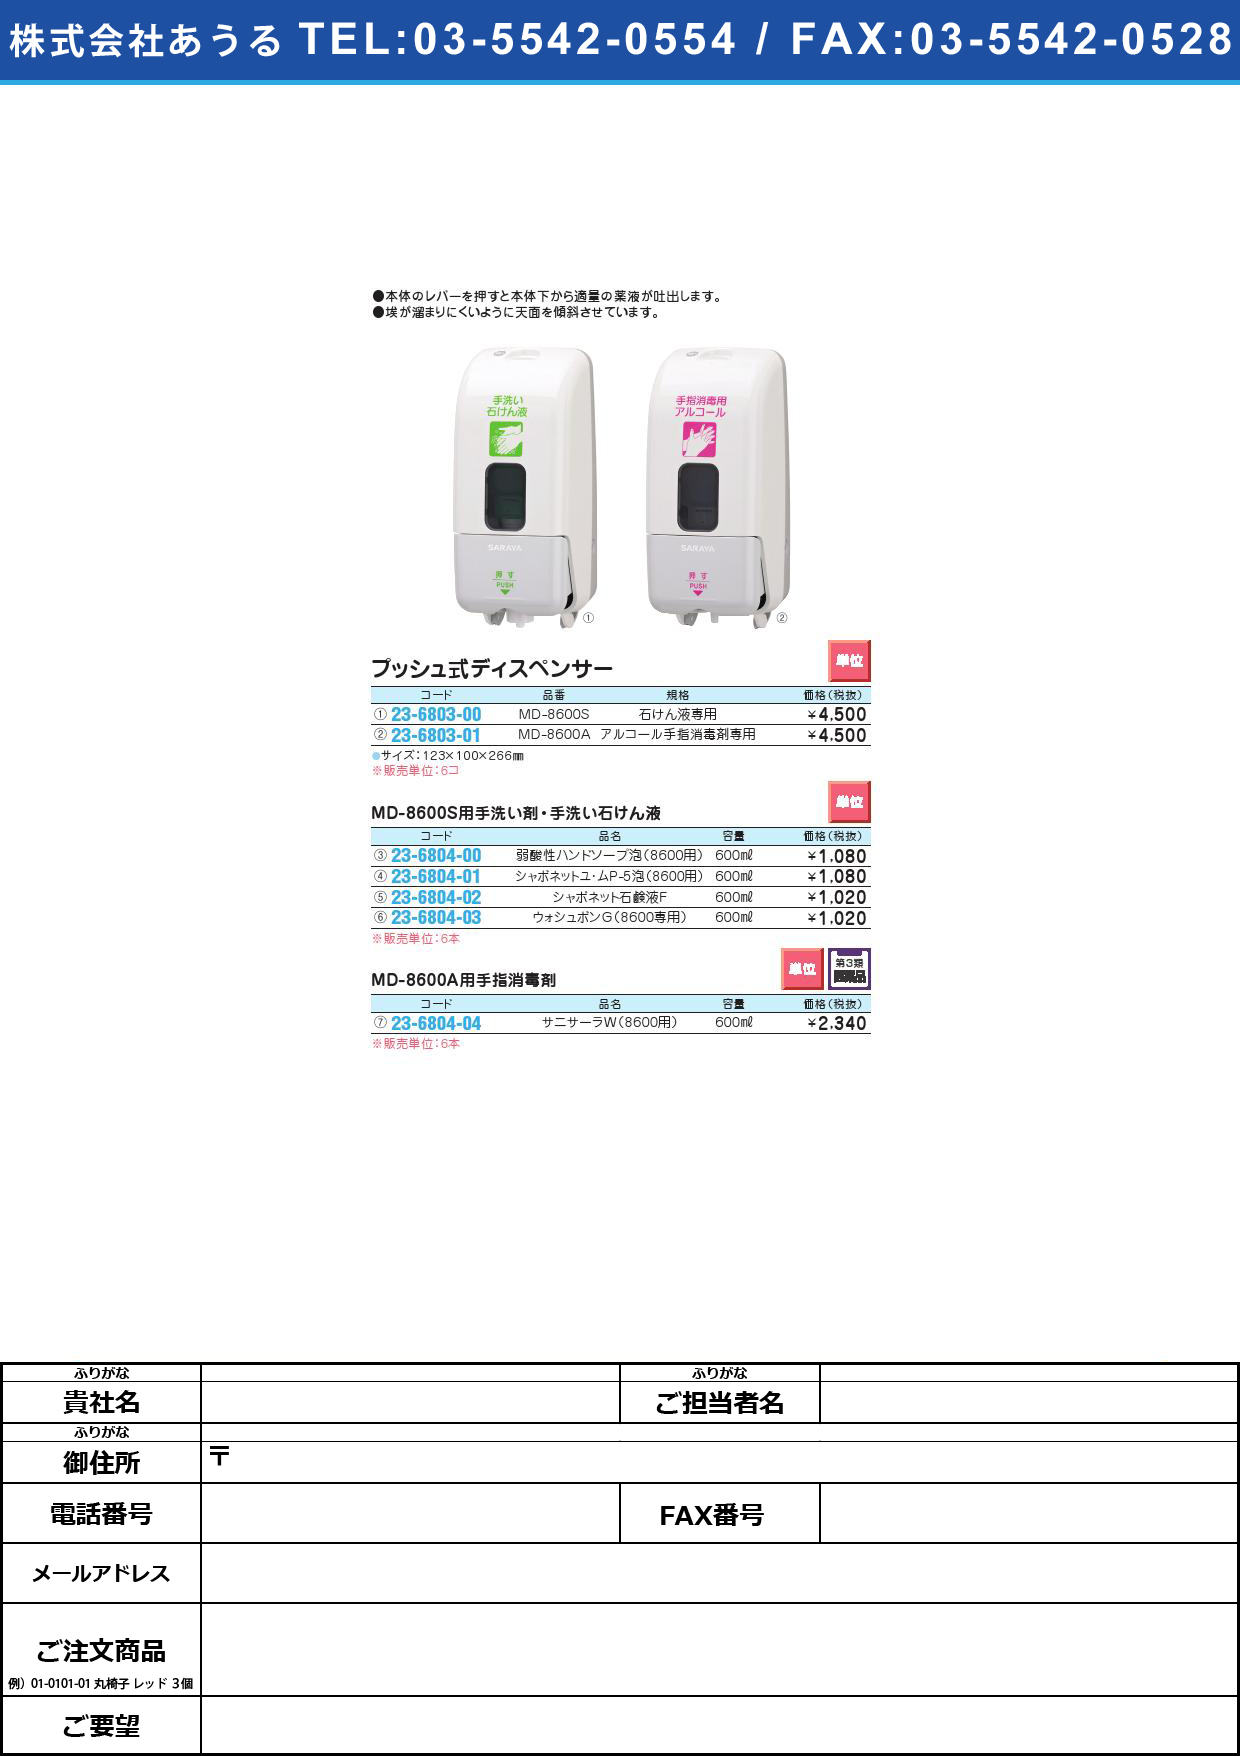 プッシュ式ディスペンサー MD-8600S(ｾｯｹﾝｴｷﾖｳ)ﾌﾟｯｼｭｼｷﾃﾞｨｽﾍﾟﾝｻｰ(23-6803-00)【6台単位】【2013年カタログ商品】